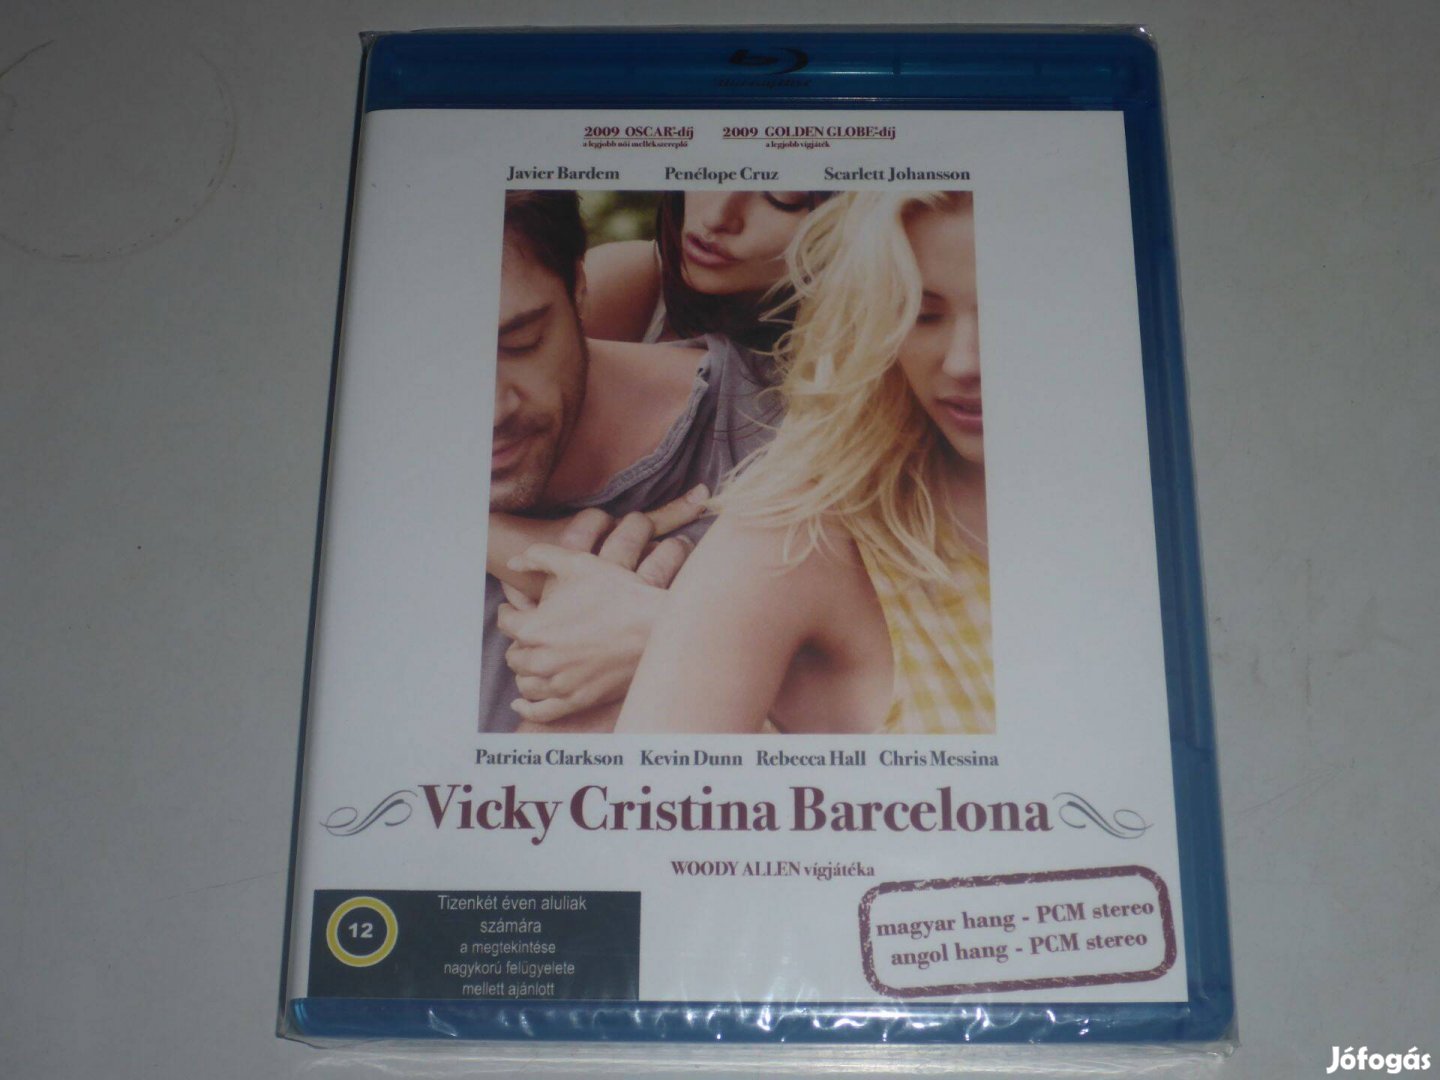 Vicky Cristina Barcelona blu-ray film